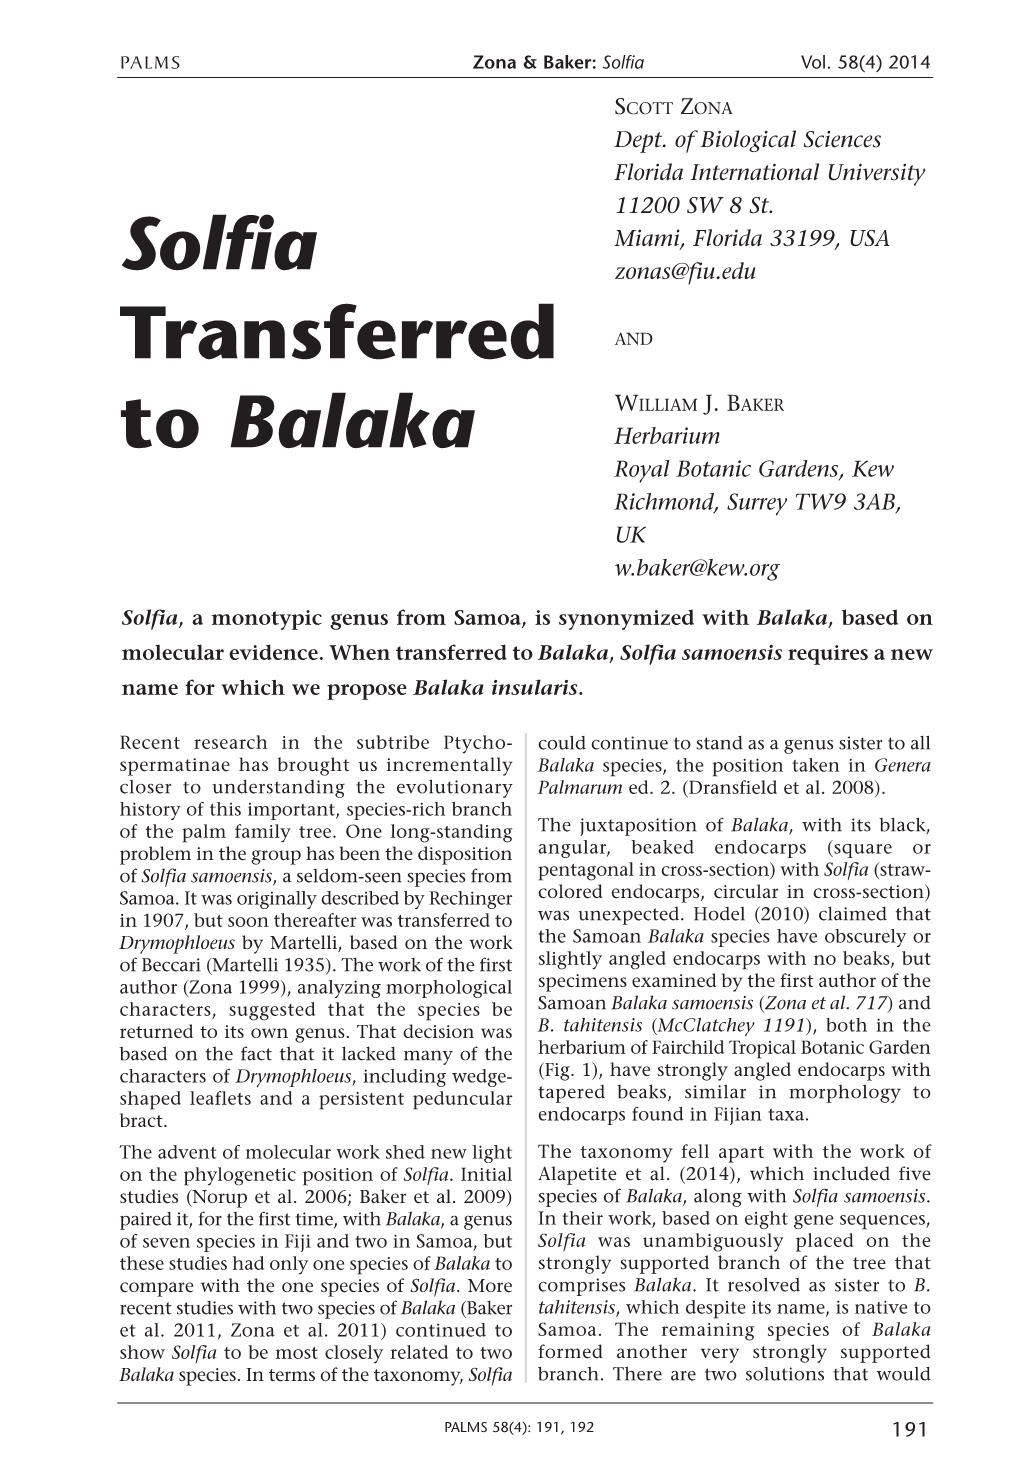 Solfia Transferred to Balaka